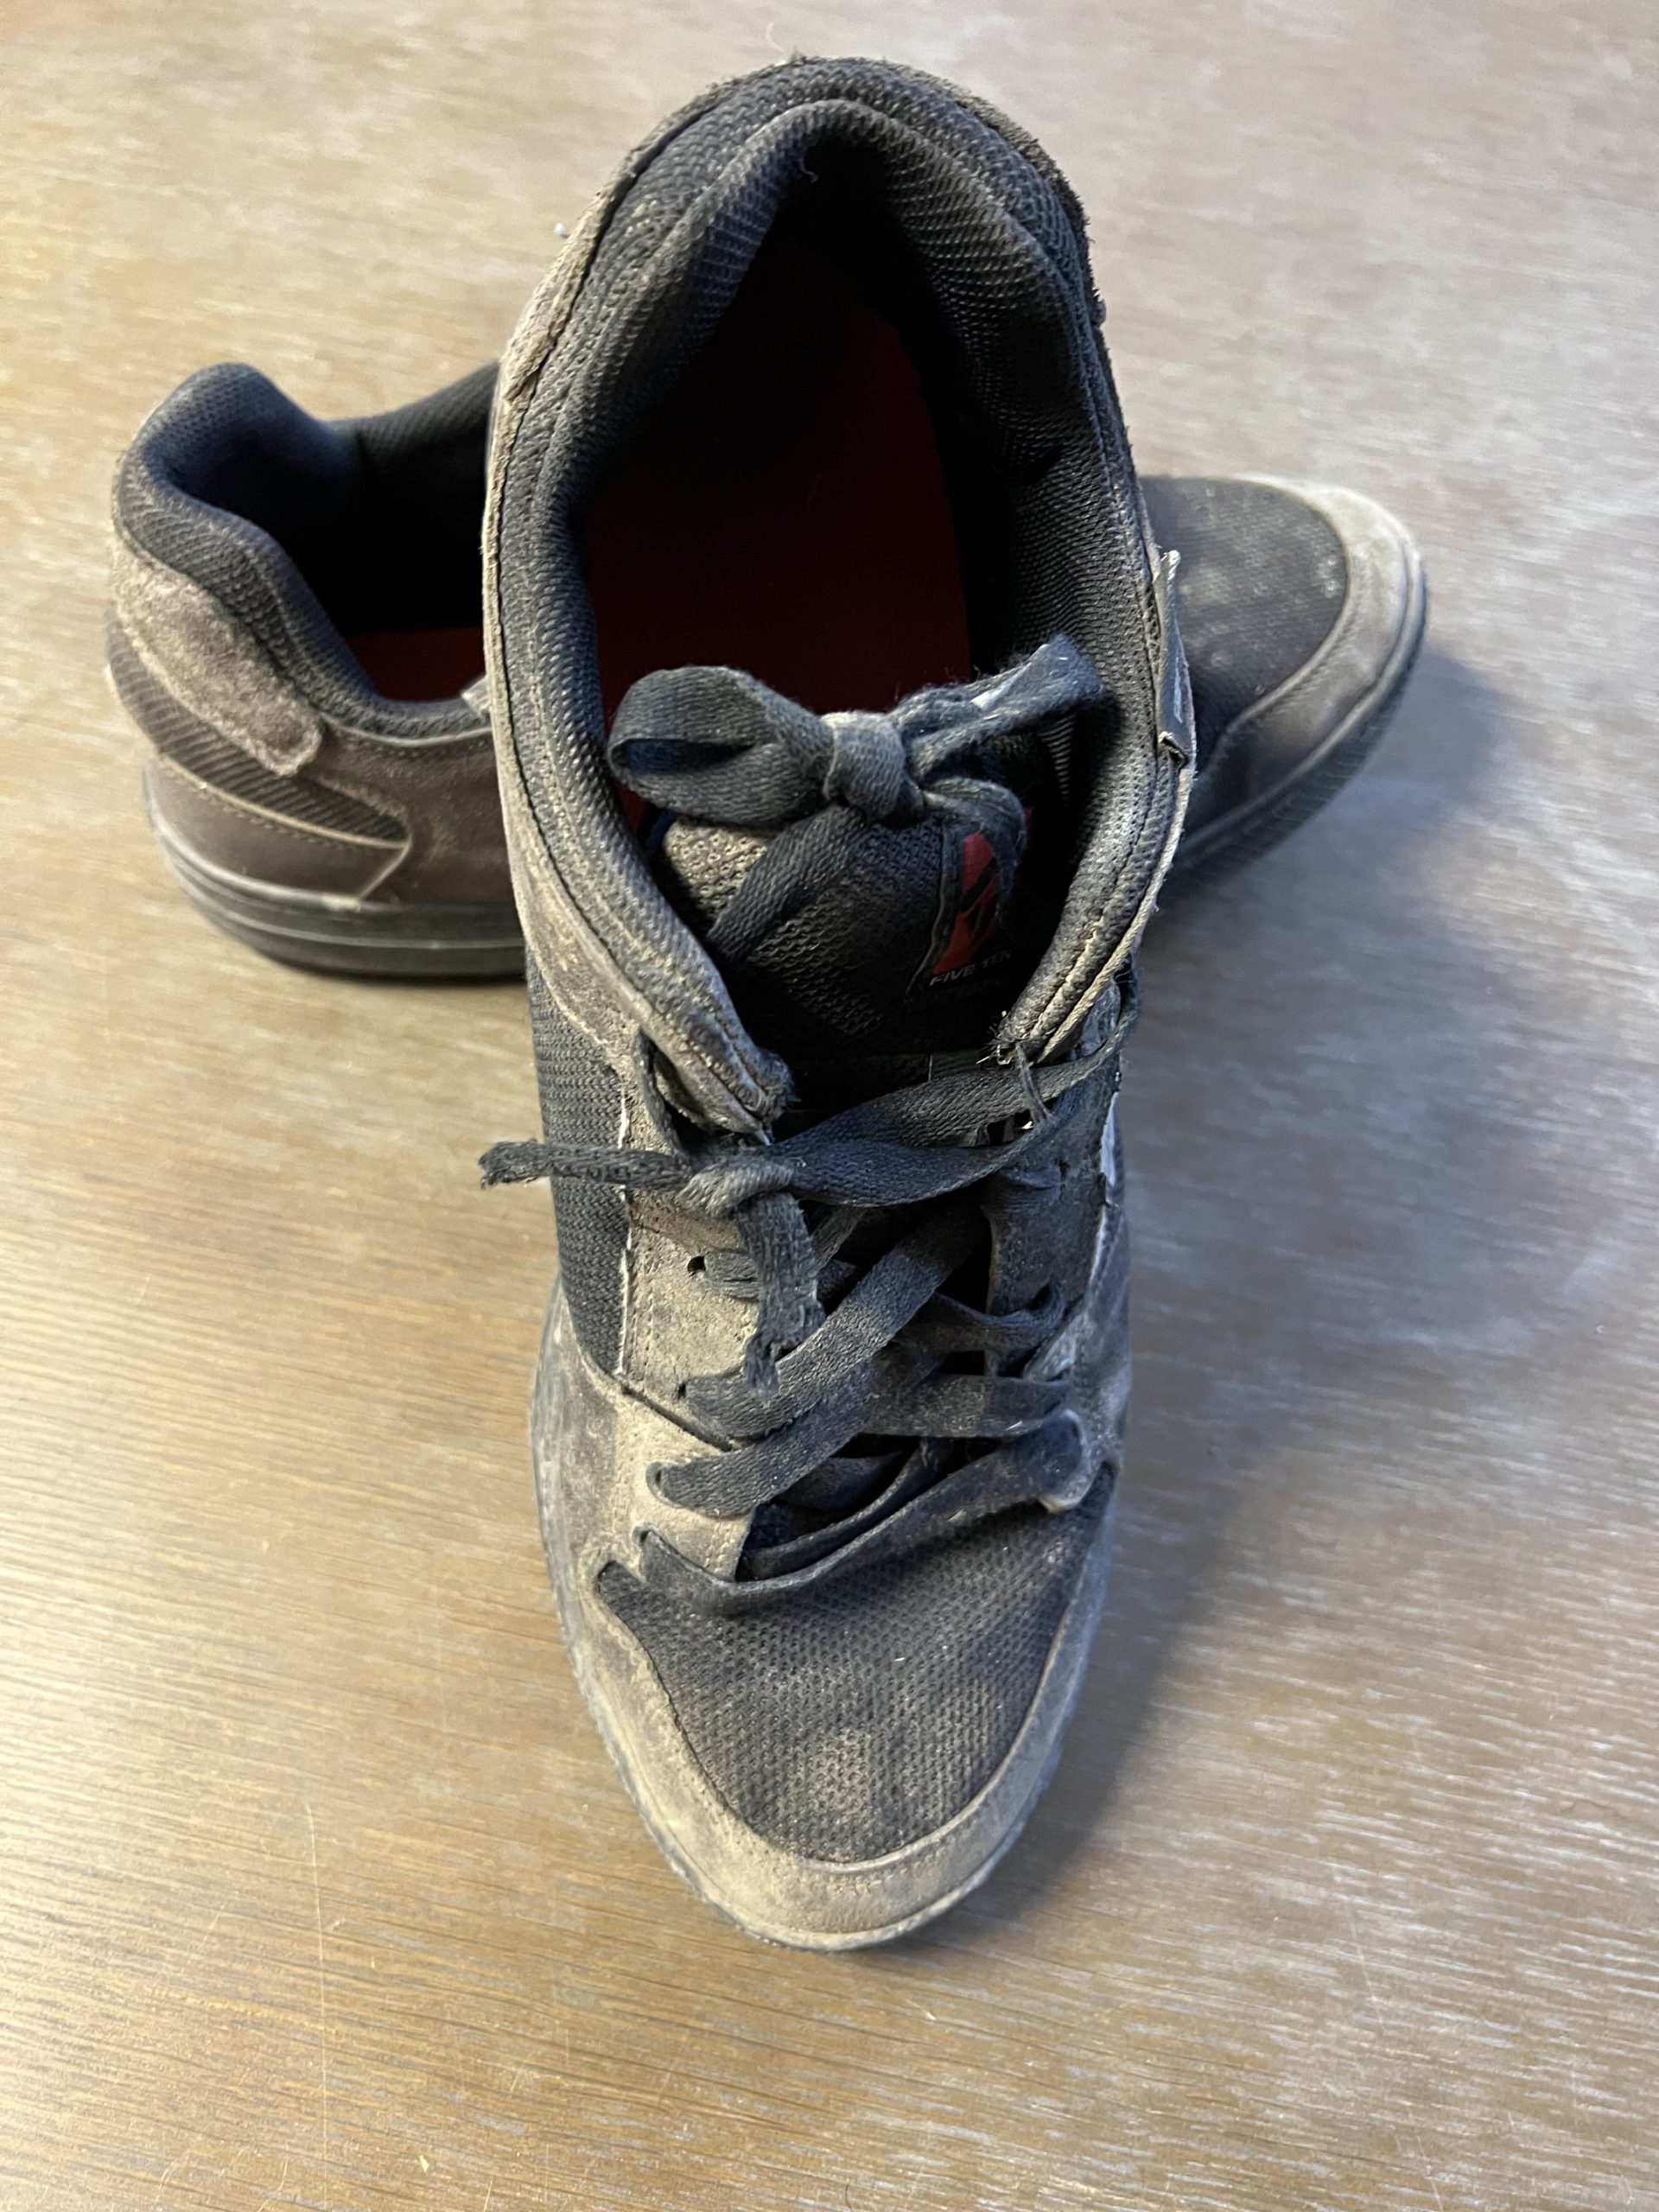 Replacing mountain bike shoe laces